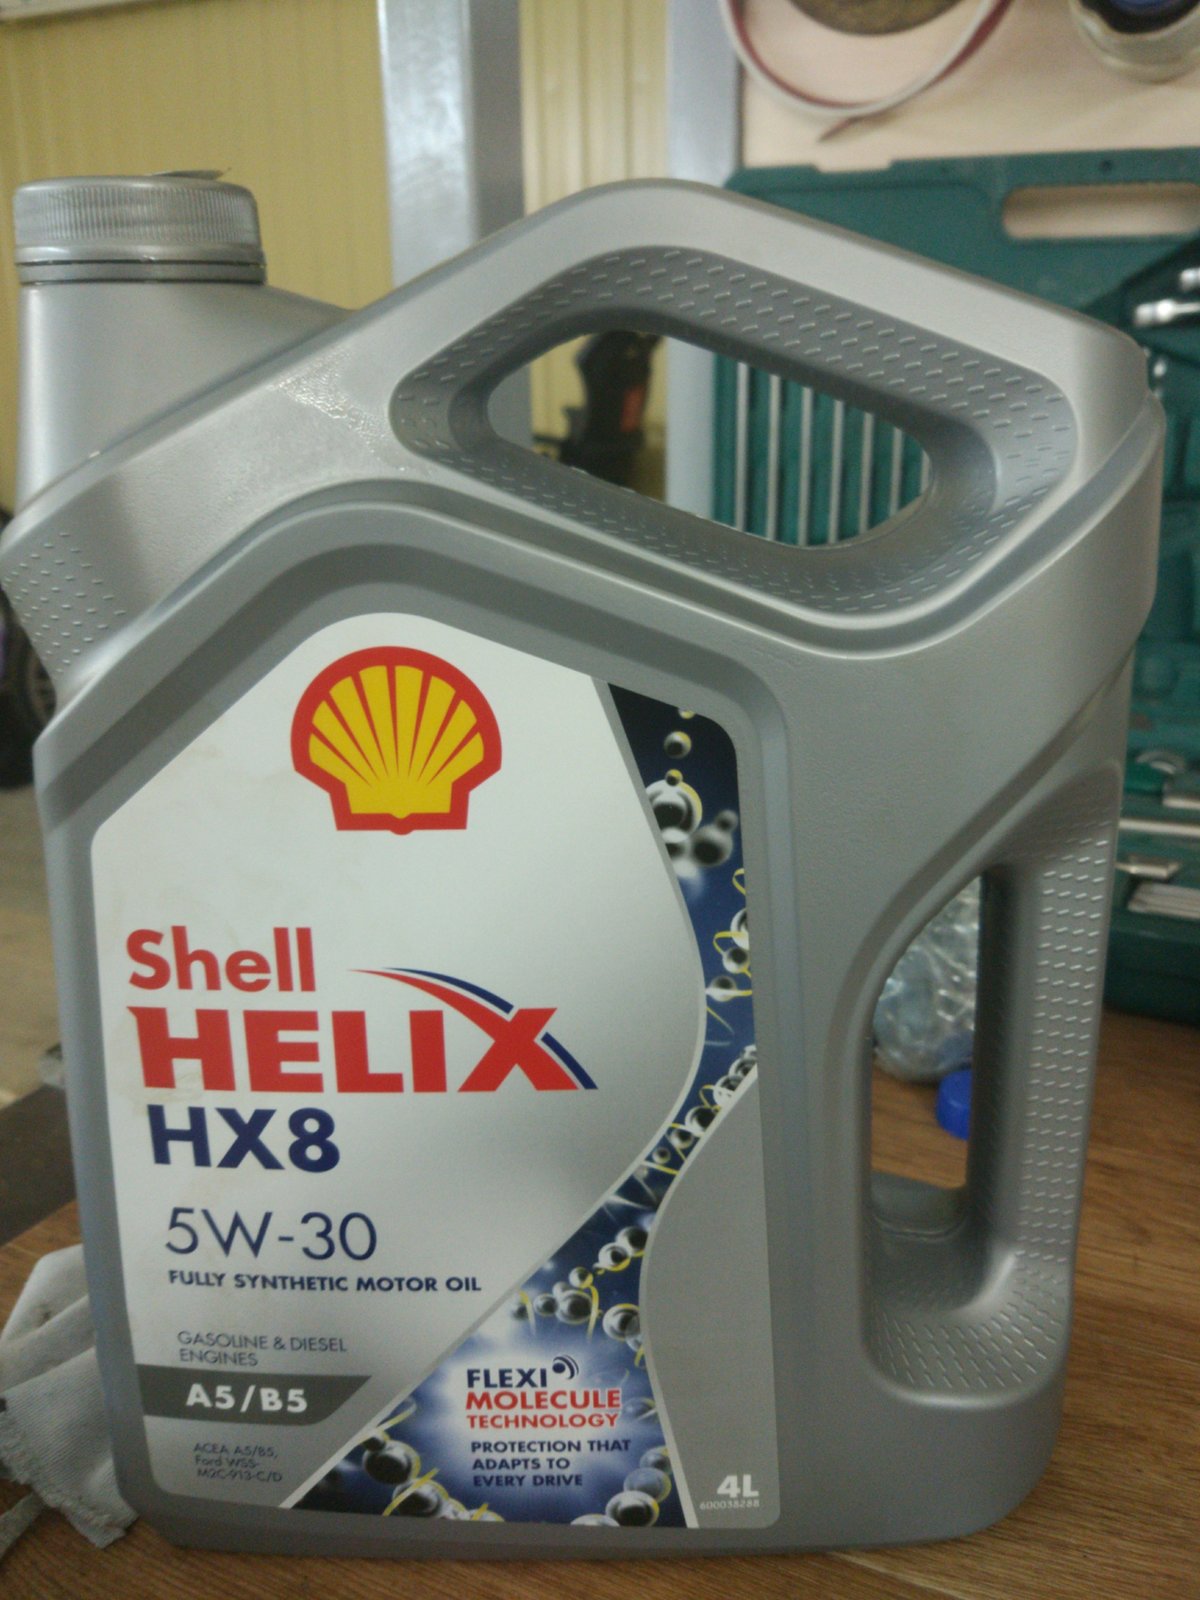 Купить масло а5 в5. Shell hx8 5w30. Shell hx8 5w30 a5/b5. Масло Шелл Хеликс hx8 5w30 a5 b5. Shell Helix 5w30 a5/b5.